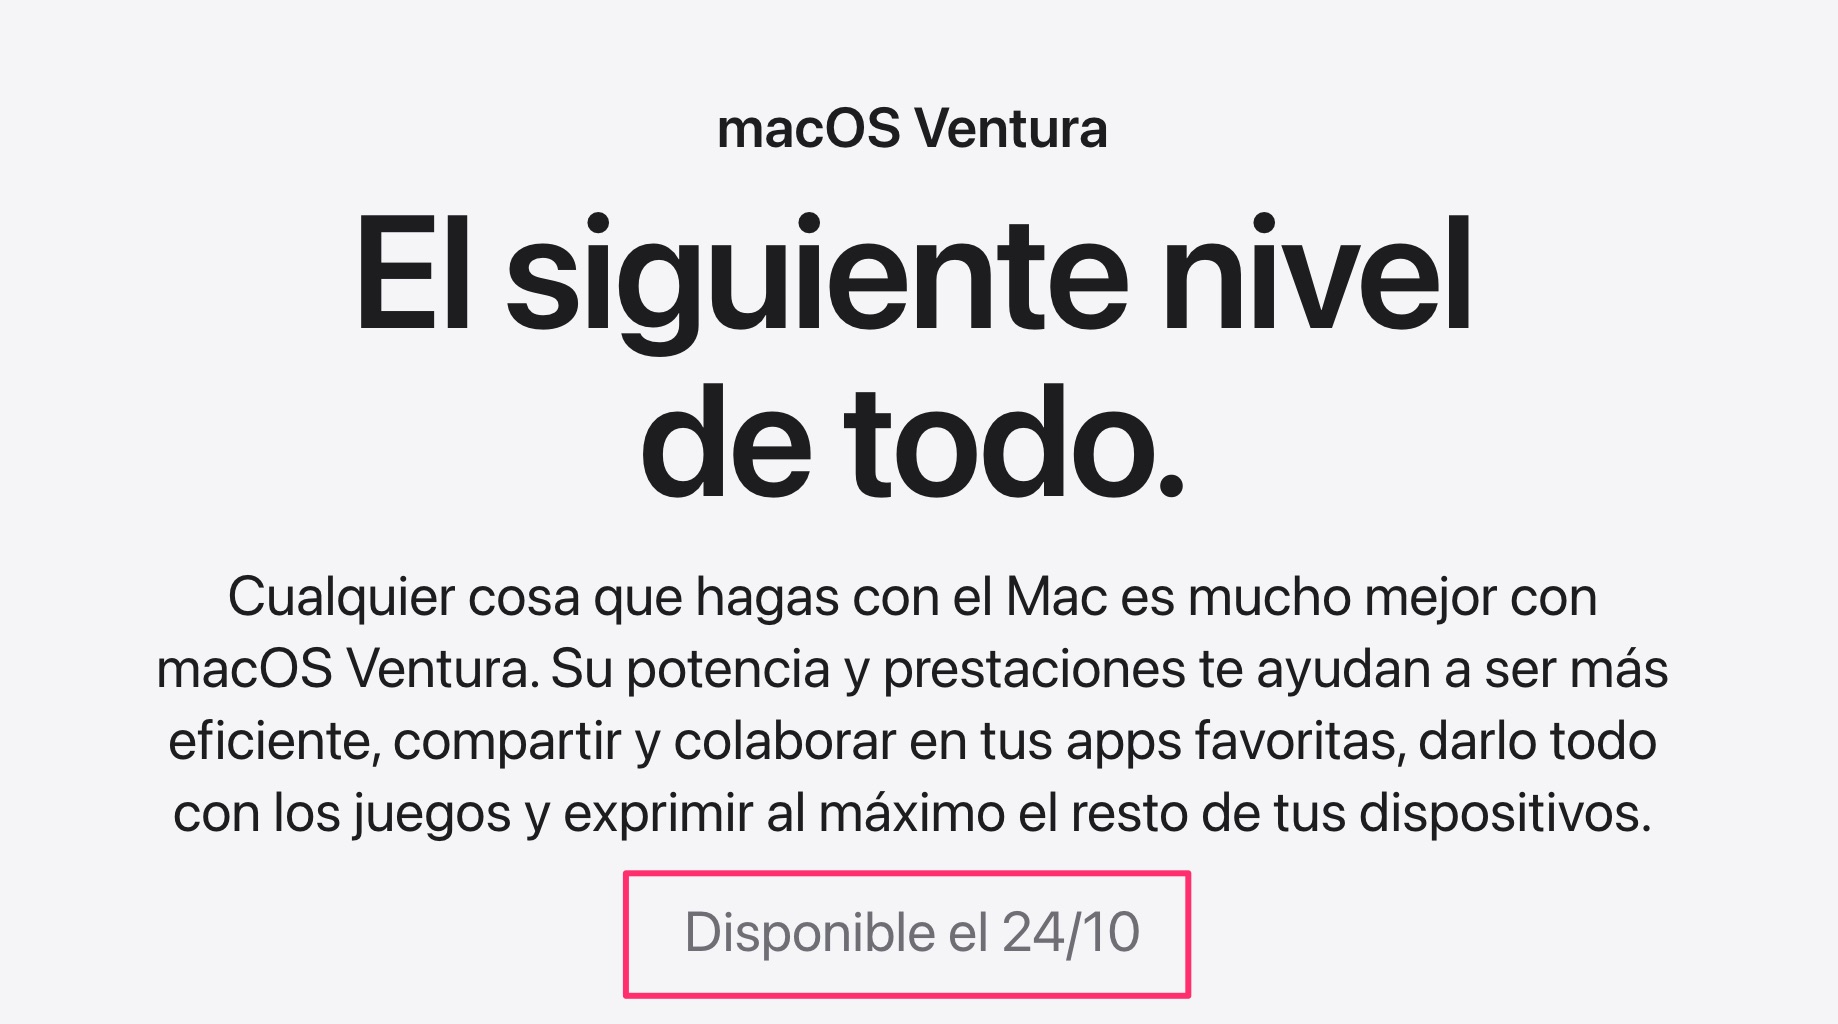 macOS Ventura disponible el 24 de octure